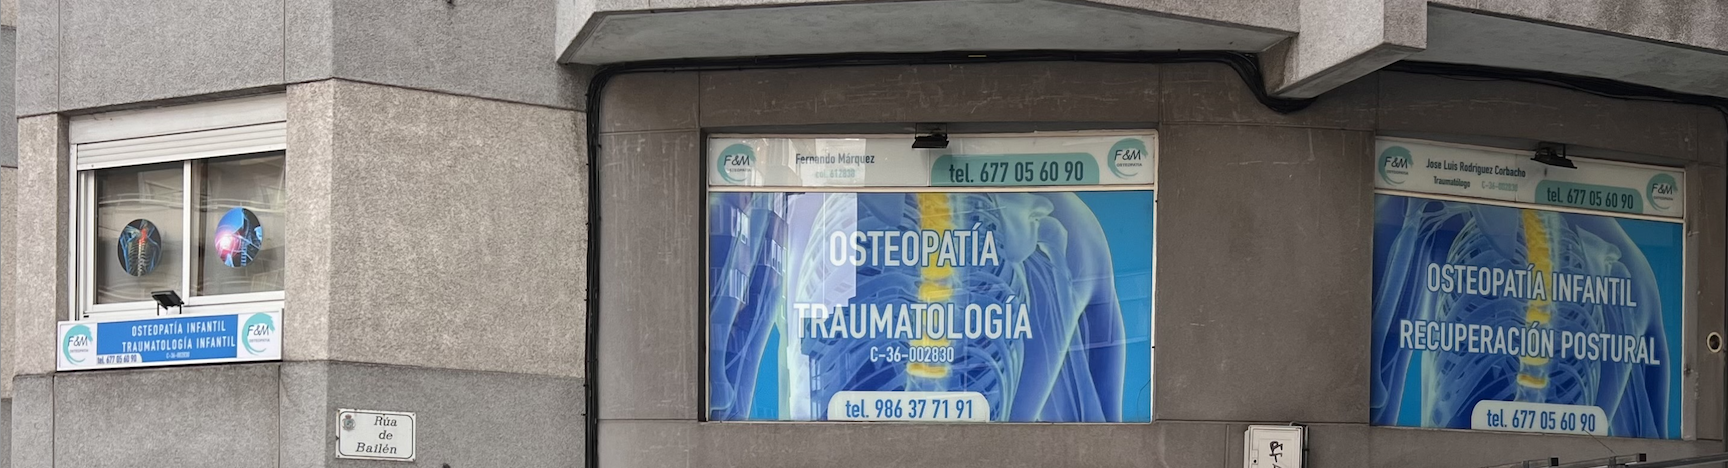 Images Biomedicvigo Osteópata